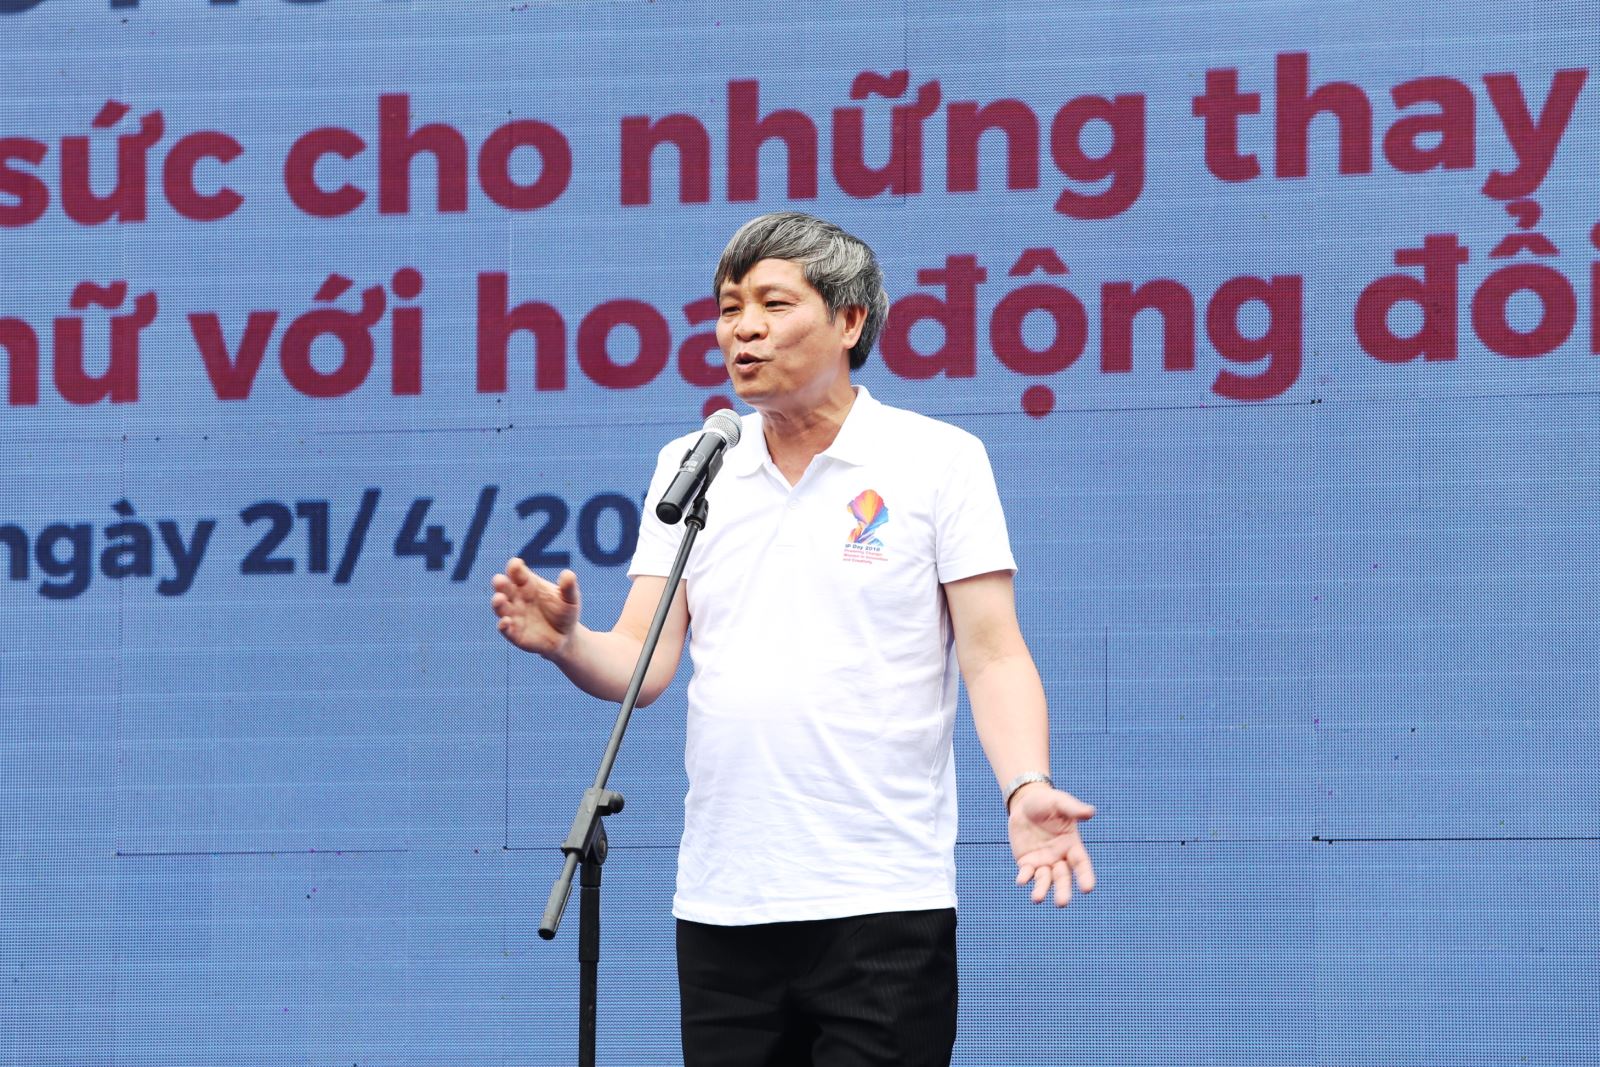 Thứ trưởng Bộ KH&CN Phạm Công Tạc phát biểu tại sự kiện.